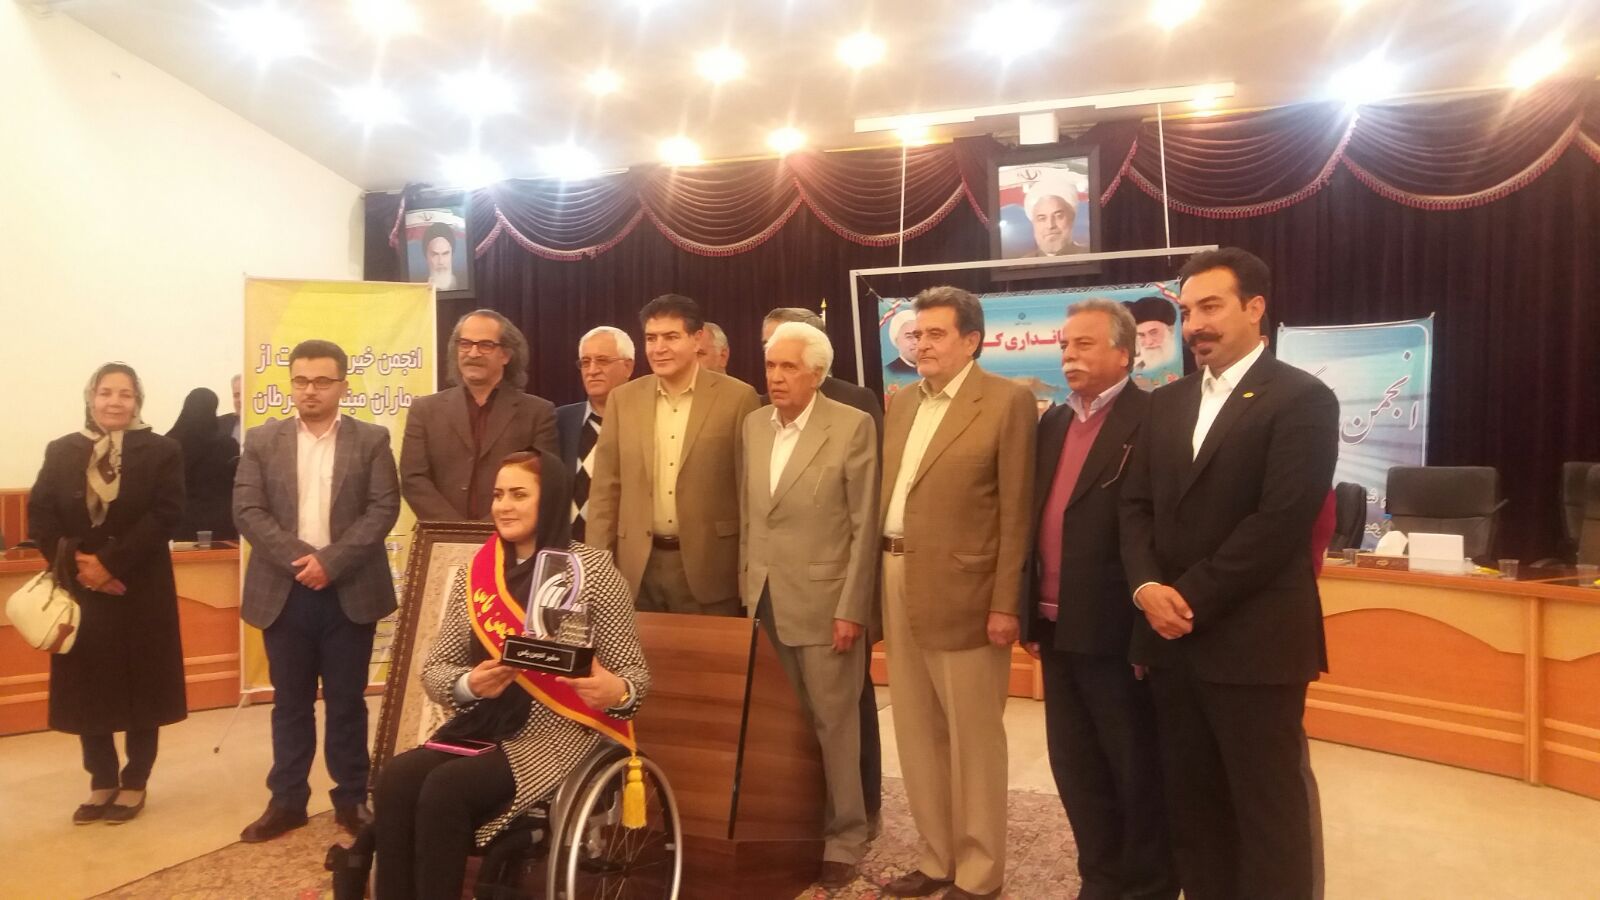 مراسم تجلیل از ورزشکار نیکوکار خانم زهرا نعمتی